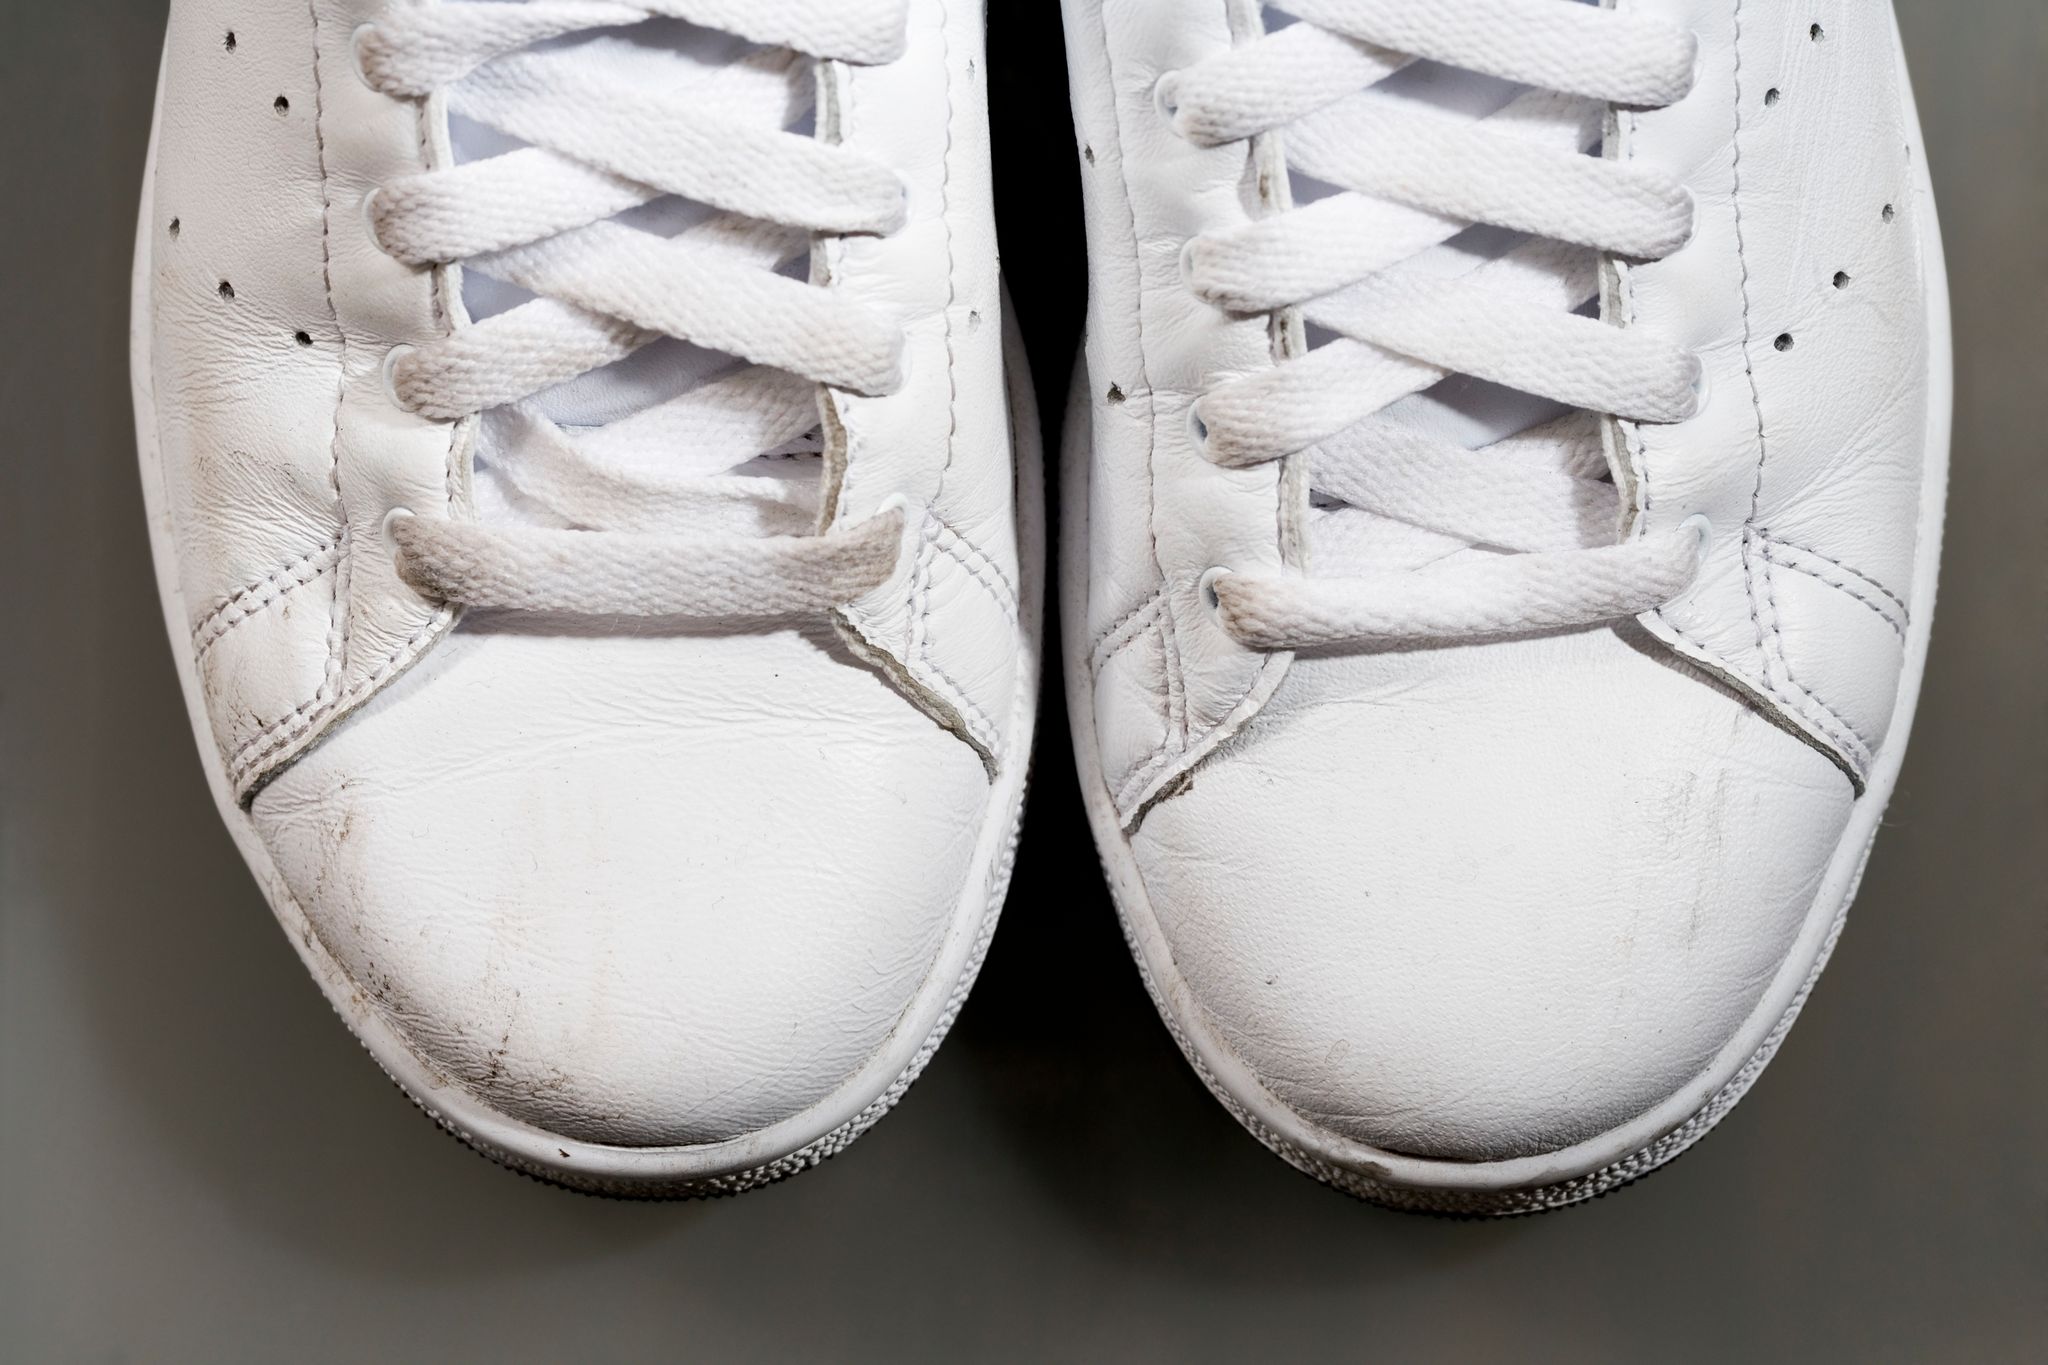 Comment bien nettoyer ses baskets blanches en cuir ? Tuto Vidéo